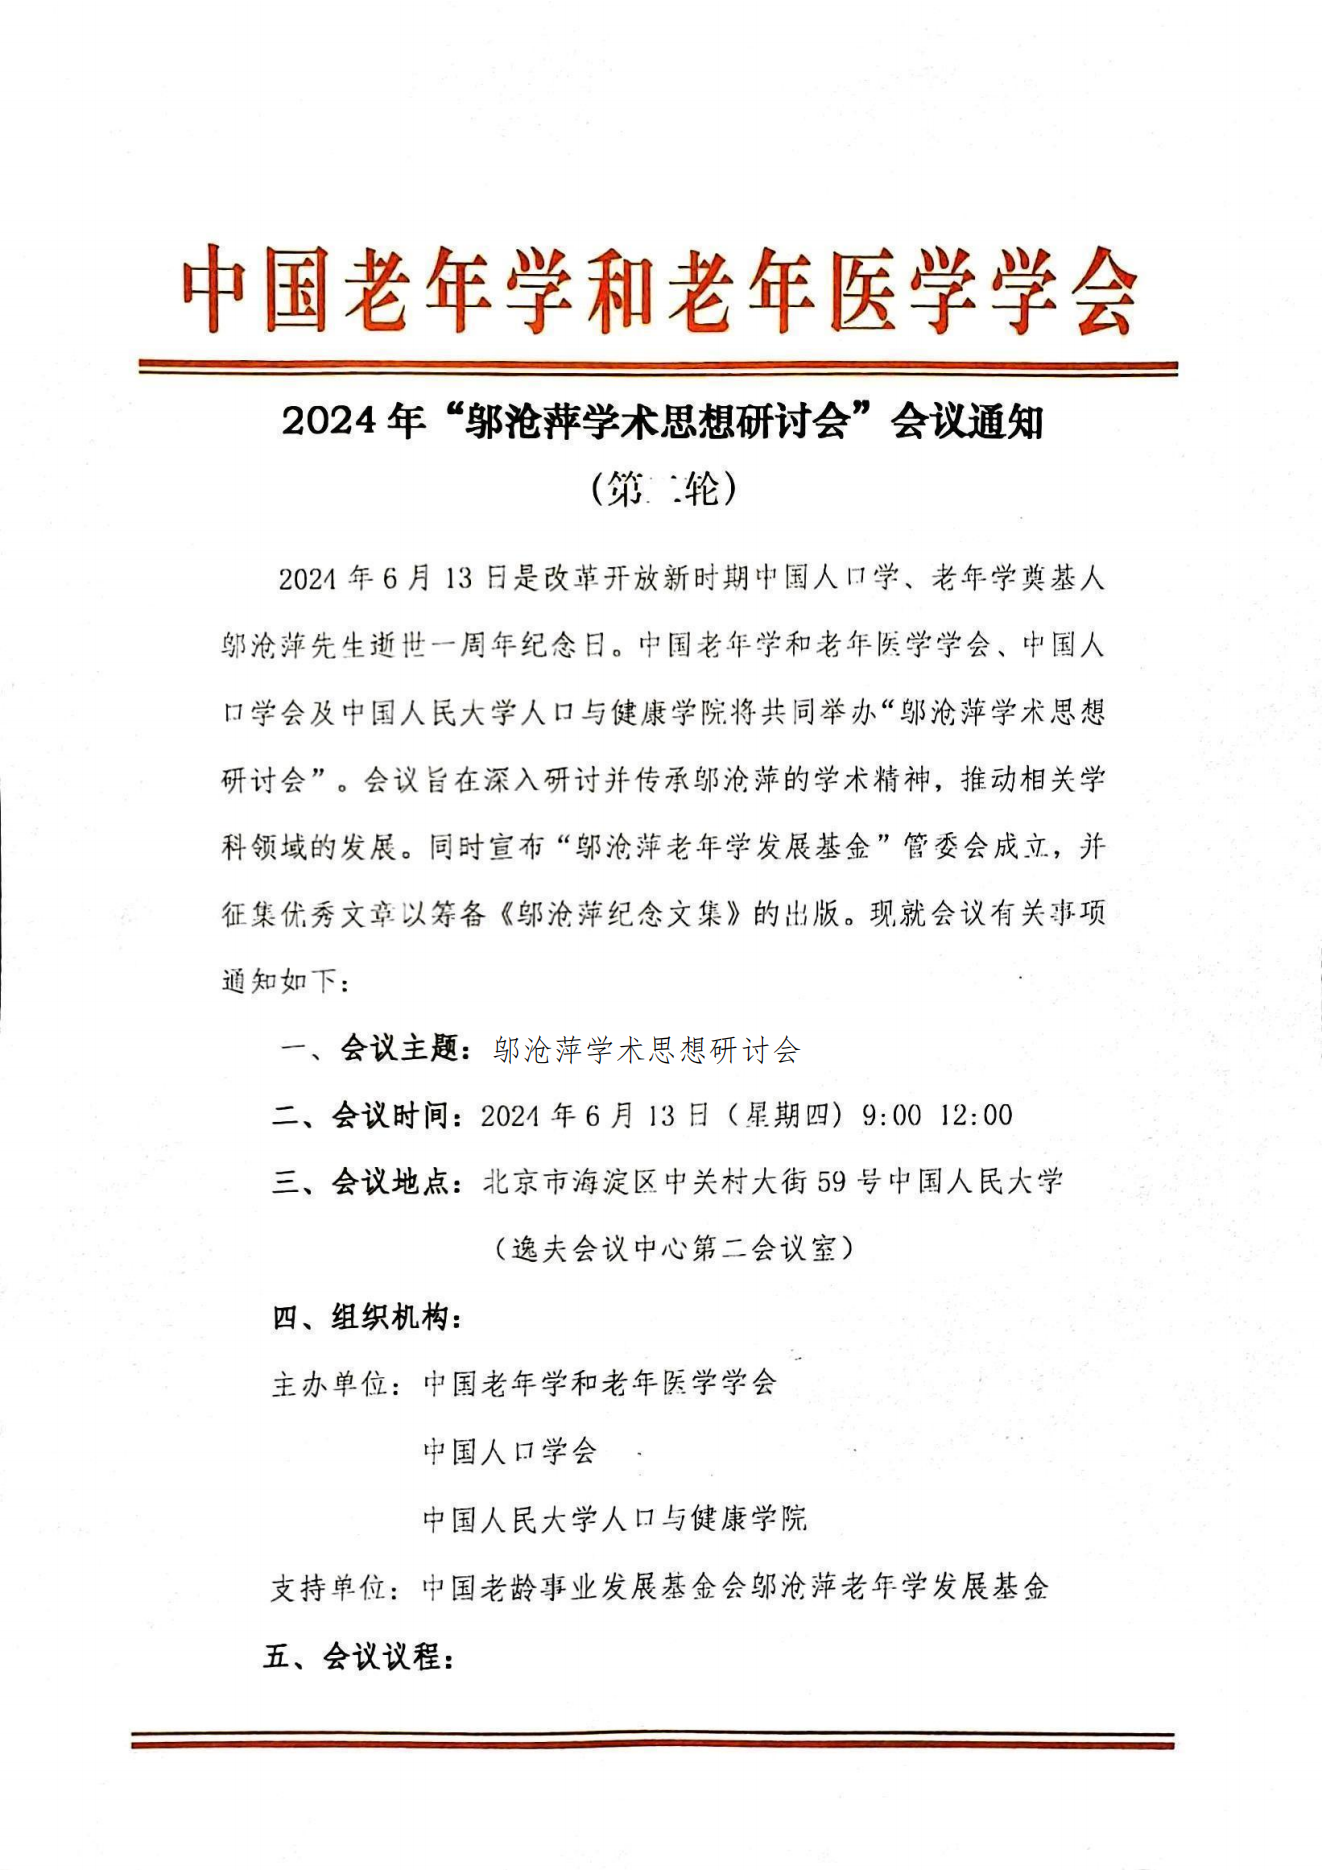 2024年“邬沧萍学术思想研究讨会“会议通知（第二轮）_00.png